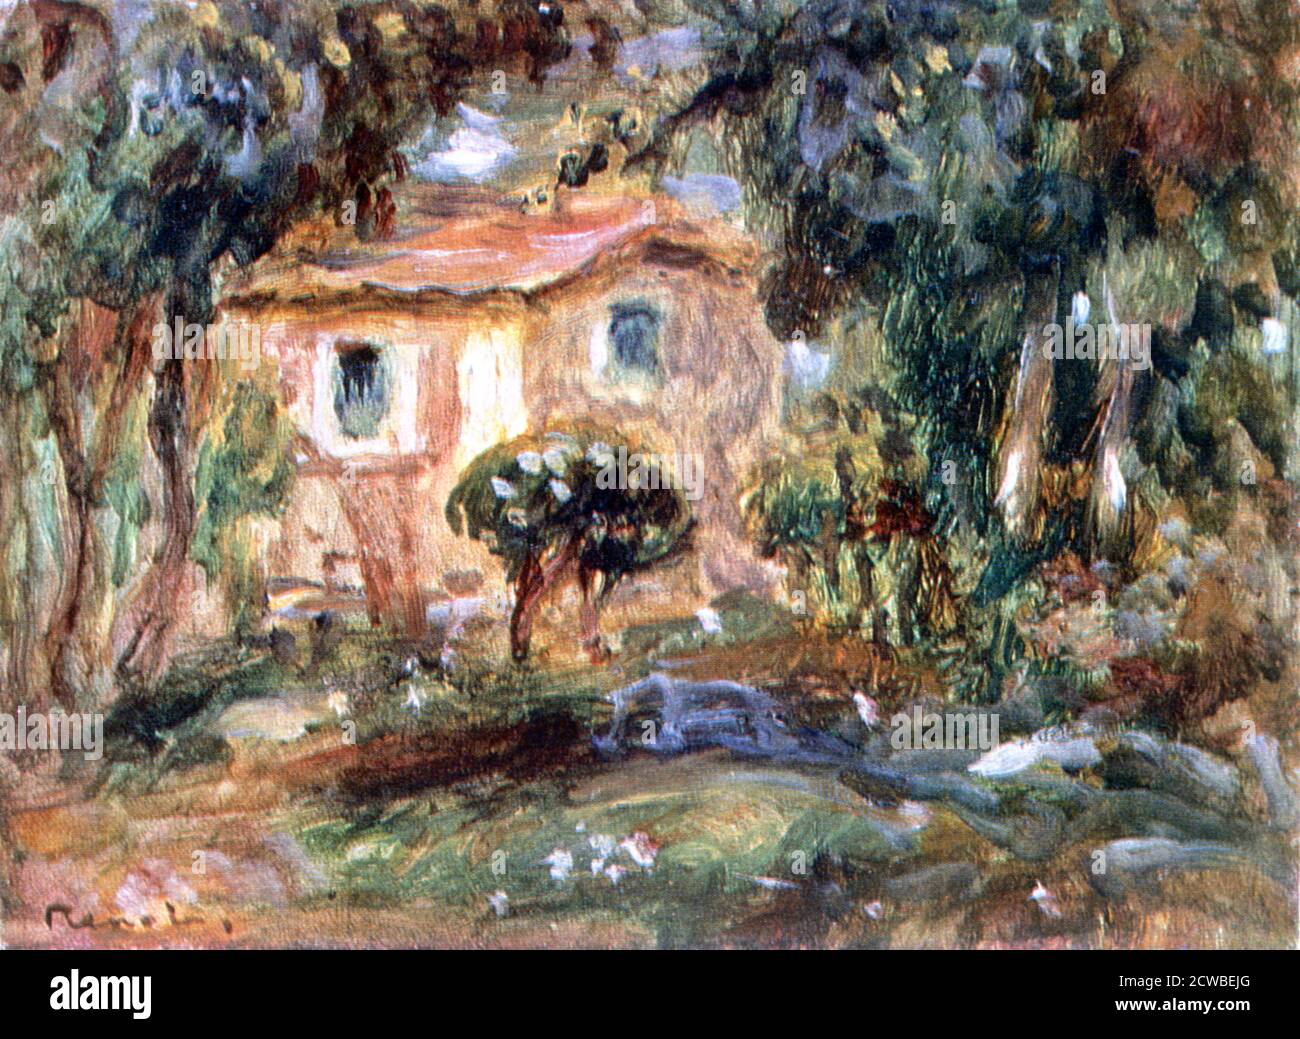 Landscape, le Cannet', 1902 Künstler: Pierre-Auguste Renoir. Renoir besuchte 1902 die Cote d'Azur, wo er sein Haus in le Cannet in der Nähe von Cannes malte. Stockfoto